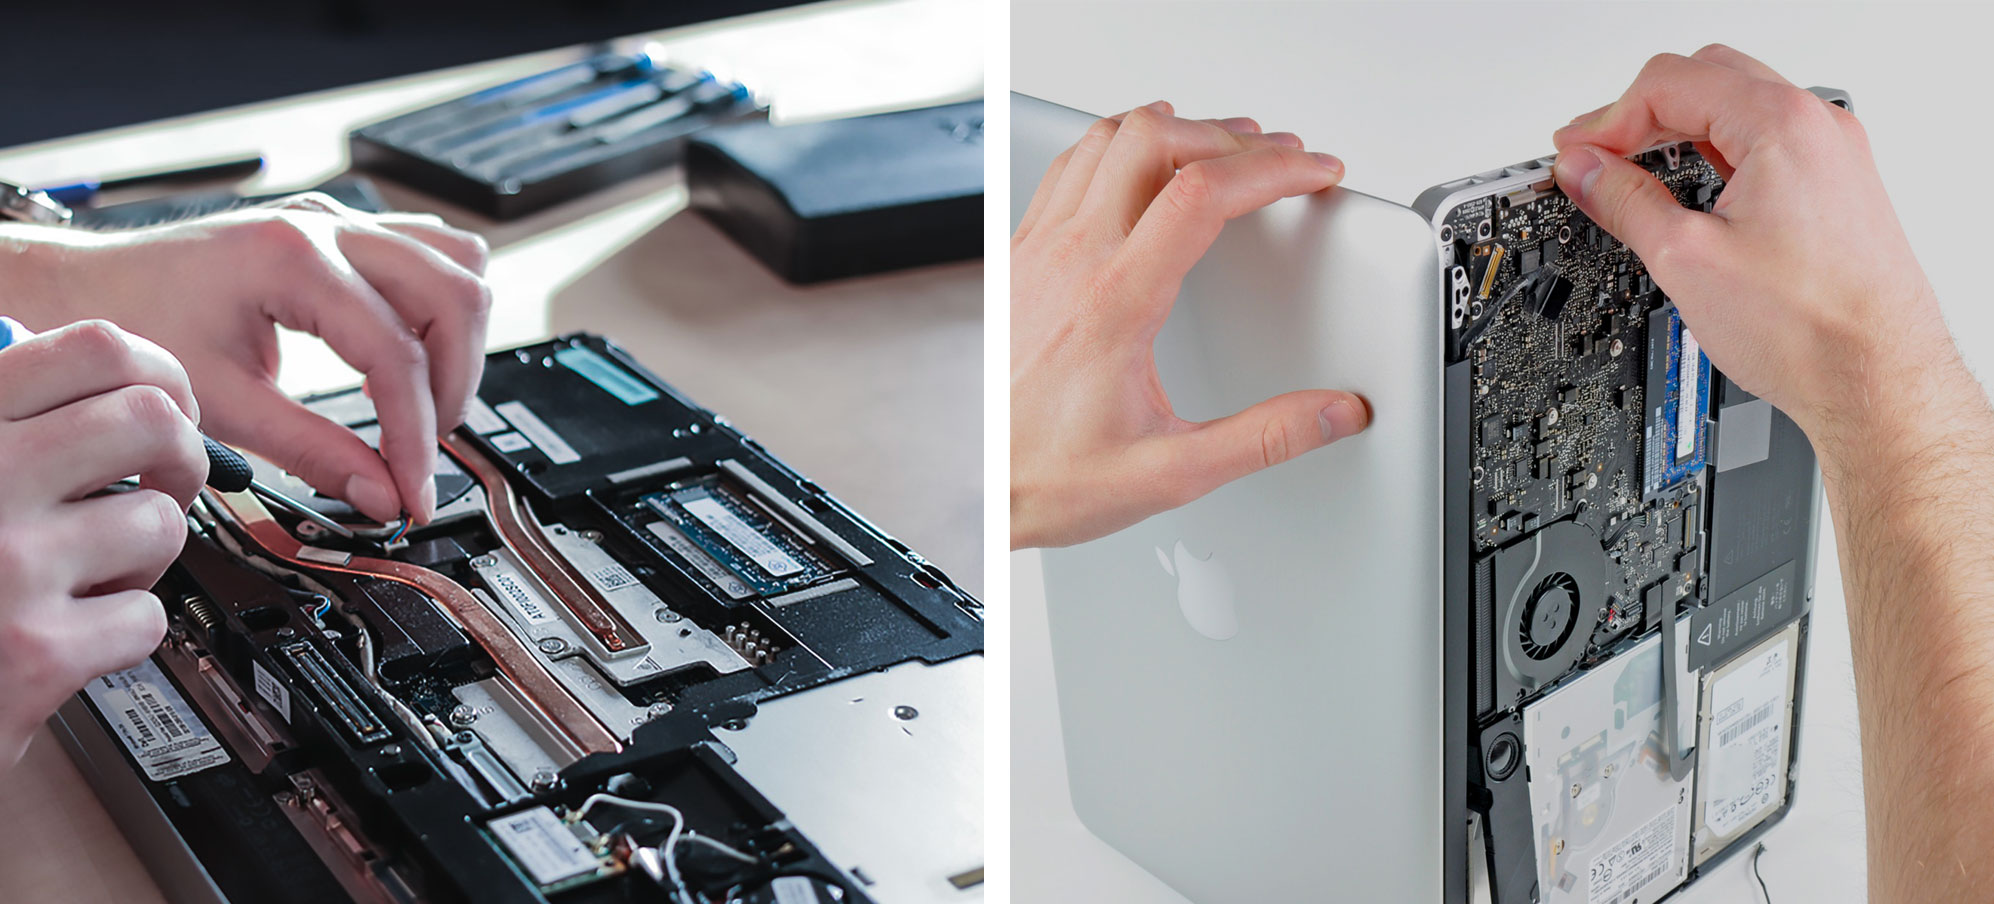 PC and Apple Mac repair